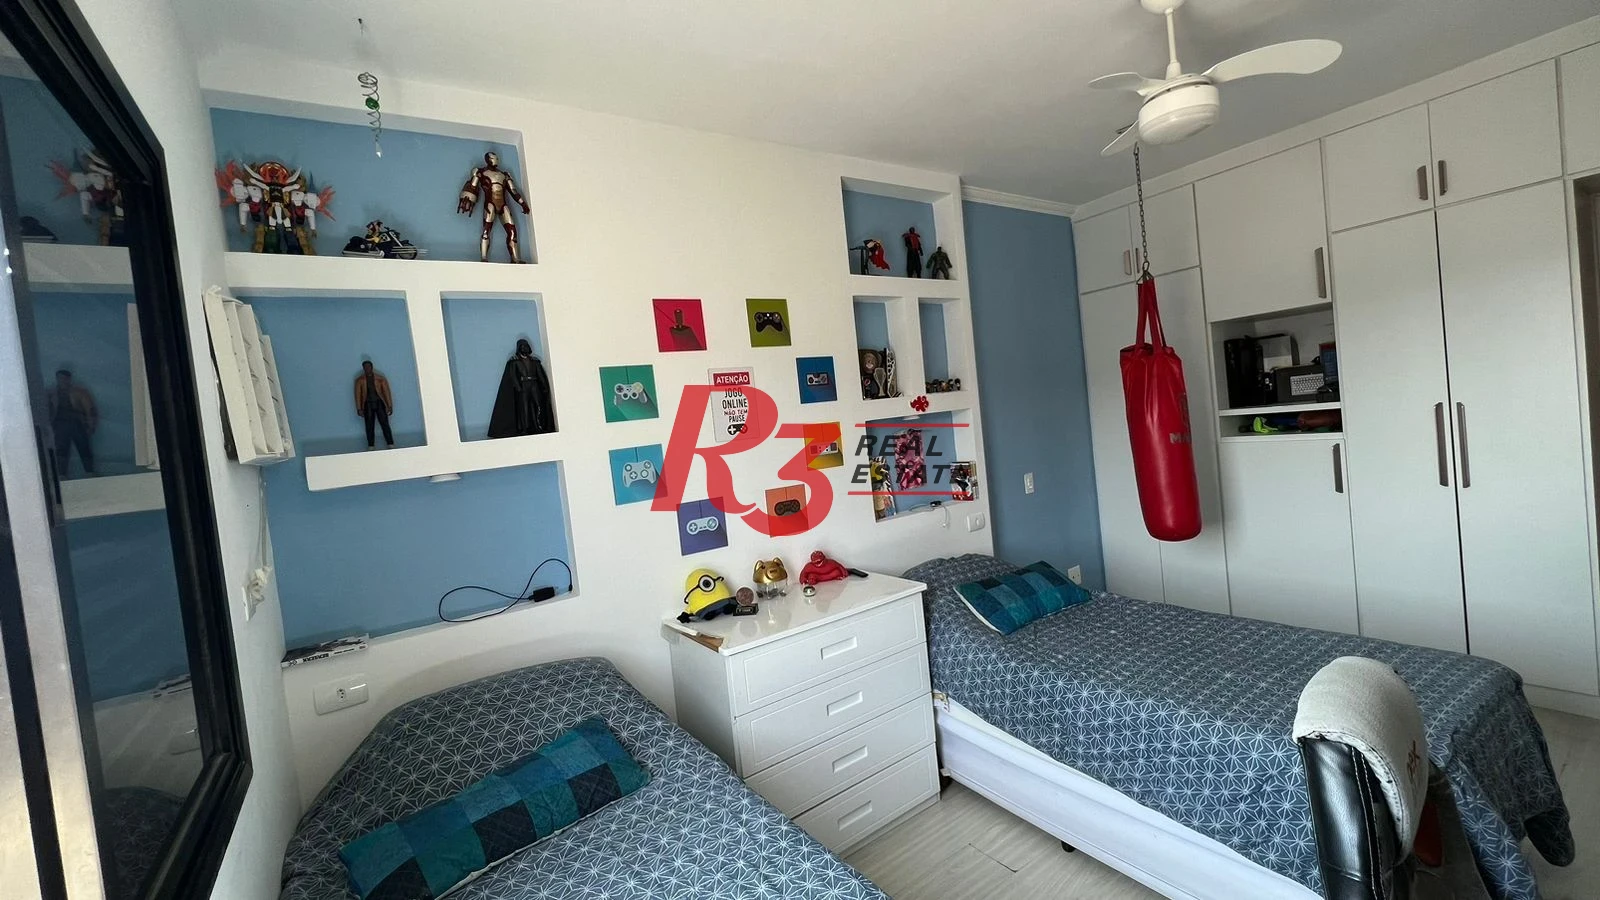 Vende-se excelente apartamento  com três dormitórios no bairro de Campo Grande, em Santos-SP